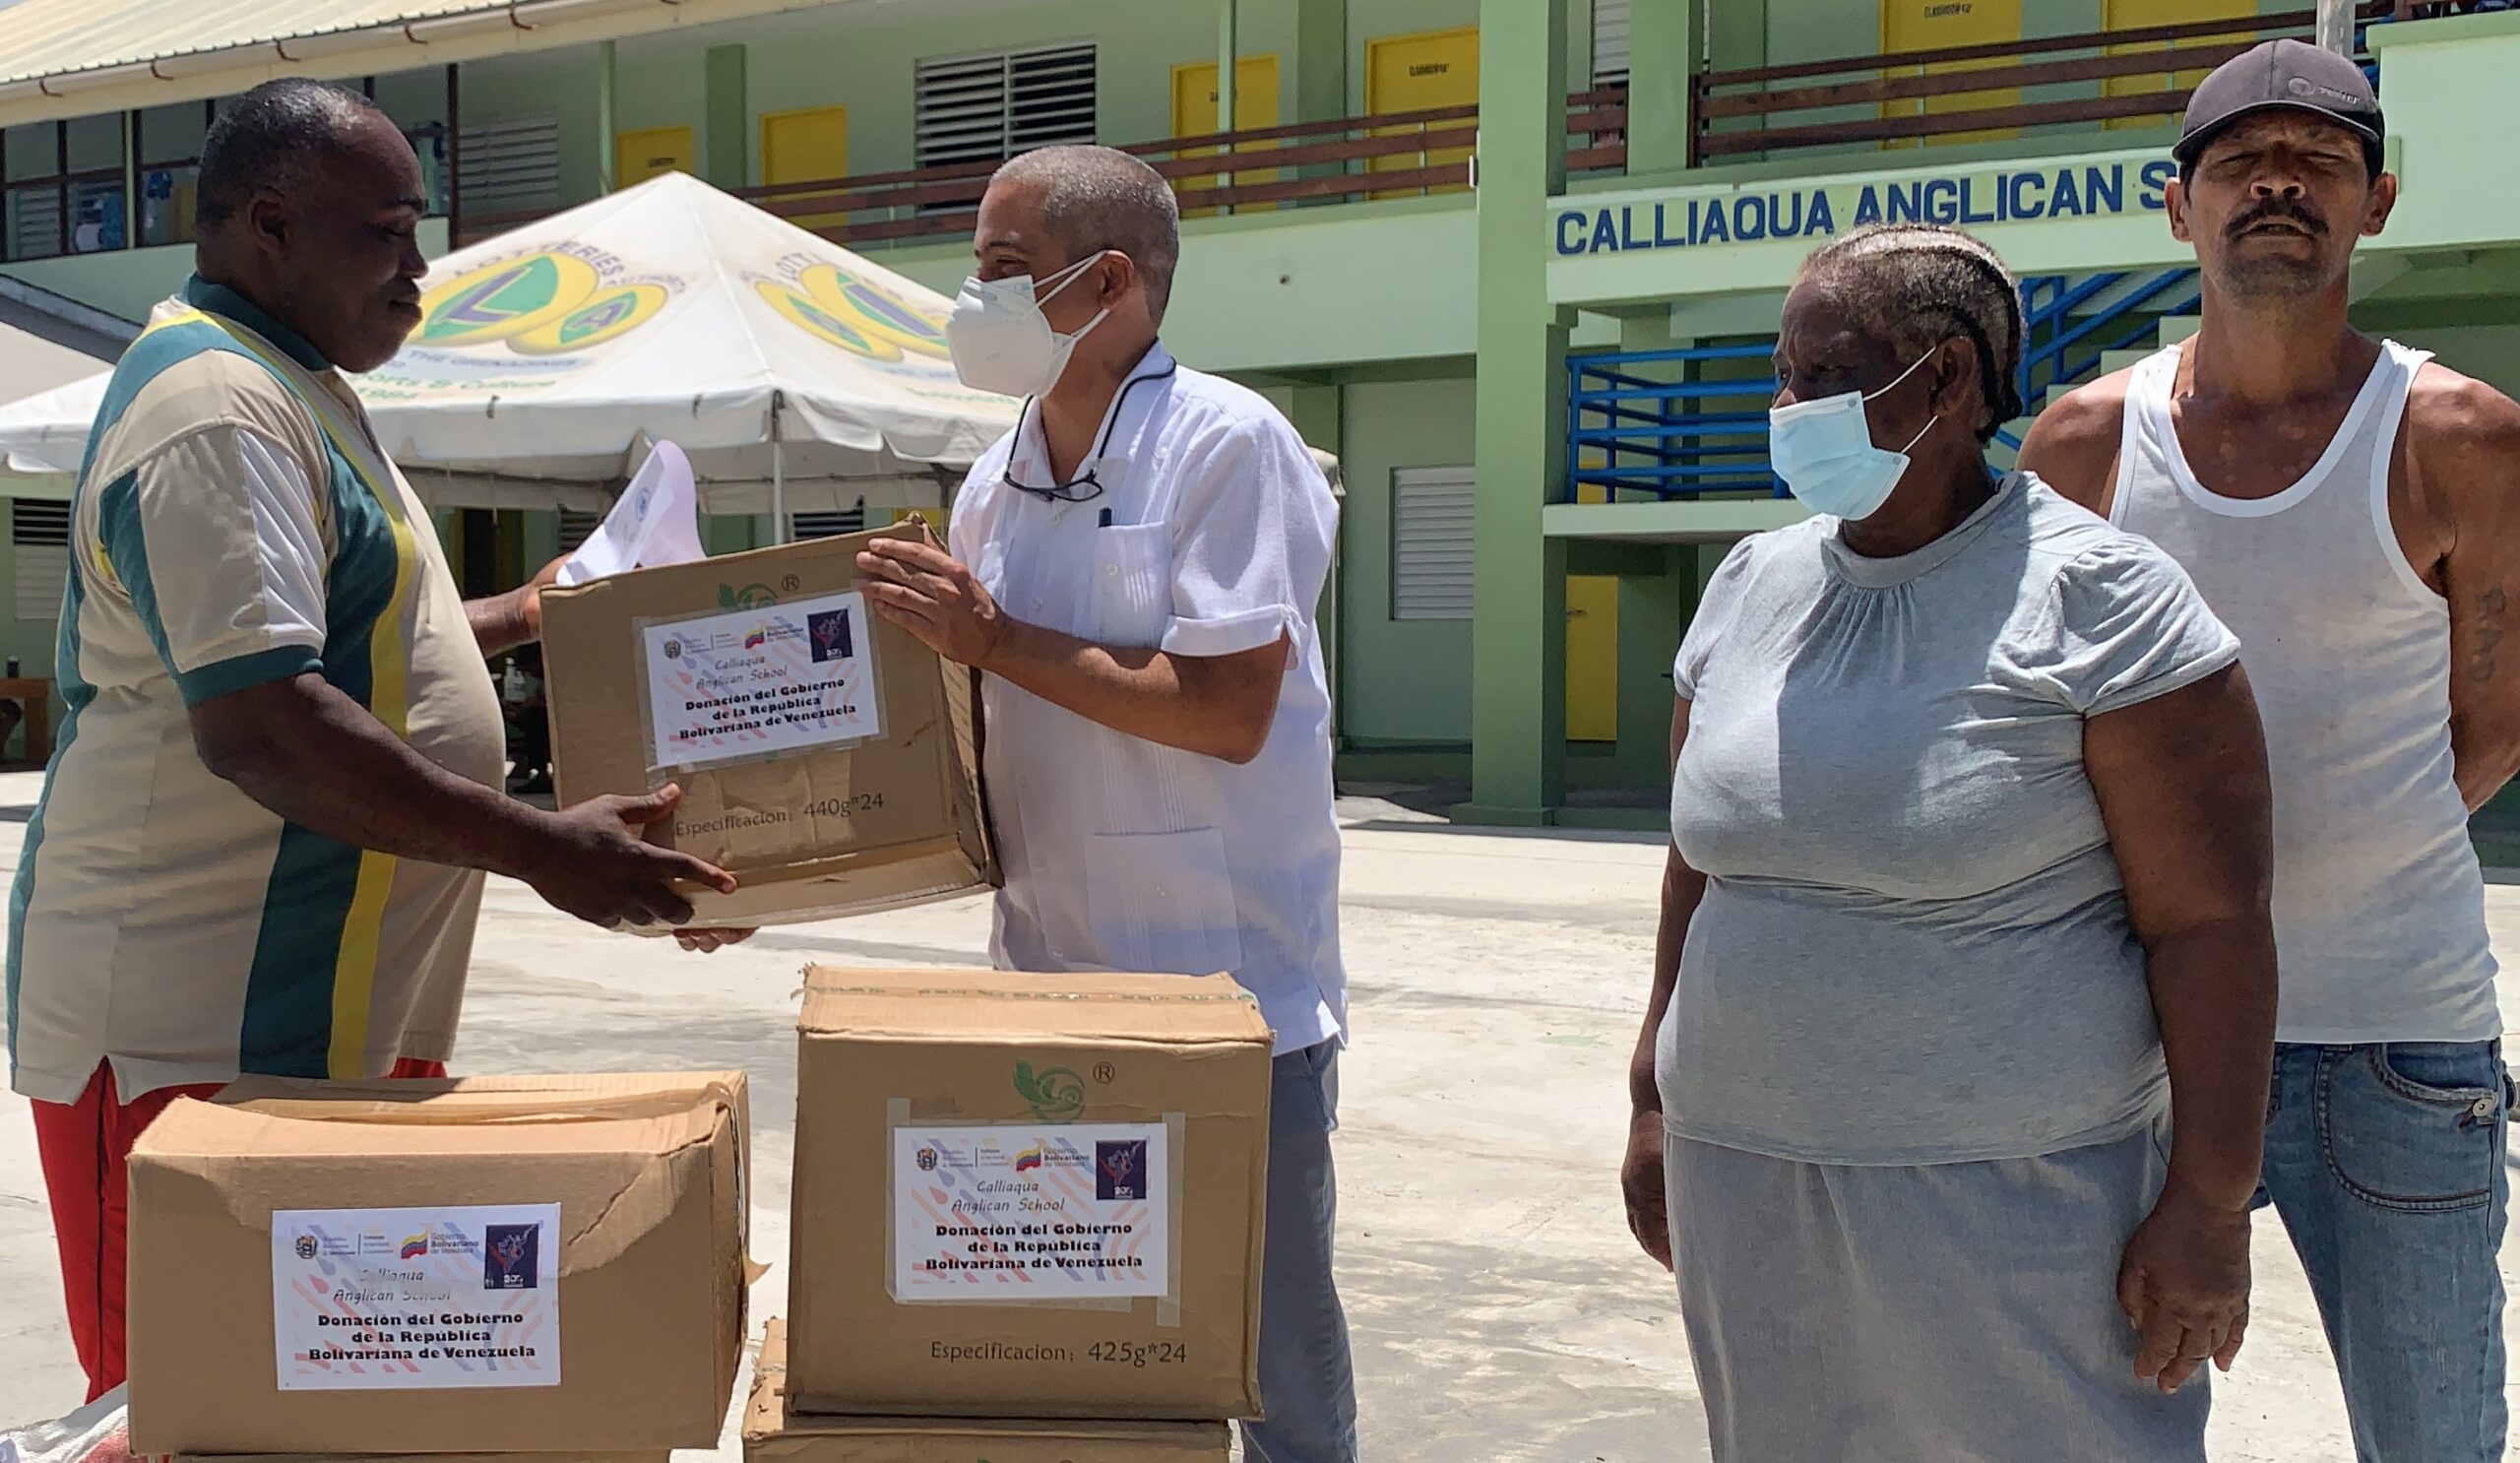 Misión venezolana entrega donativos a los refugios  de San Vicente y las Granadinas